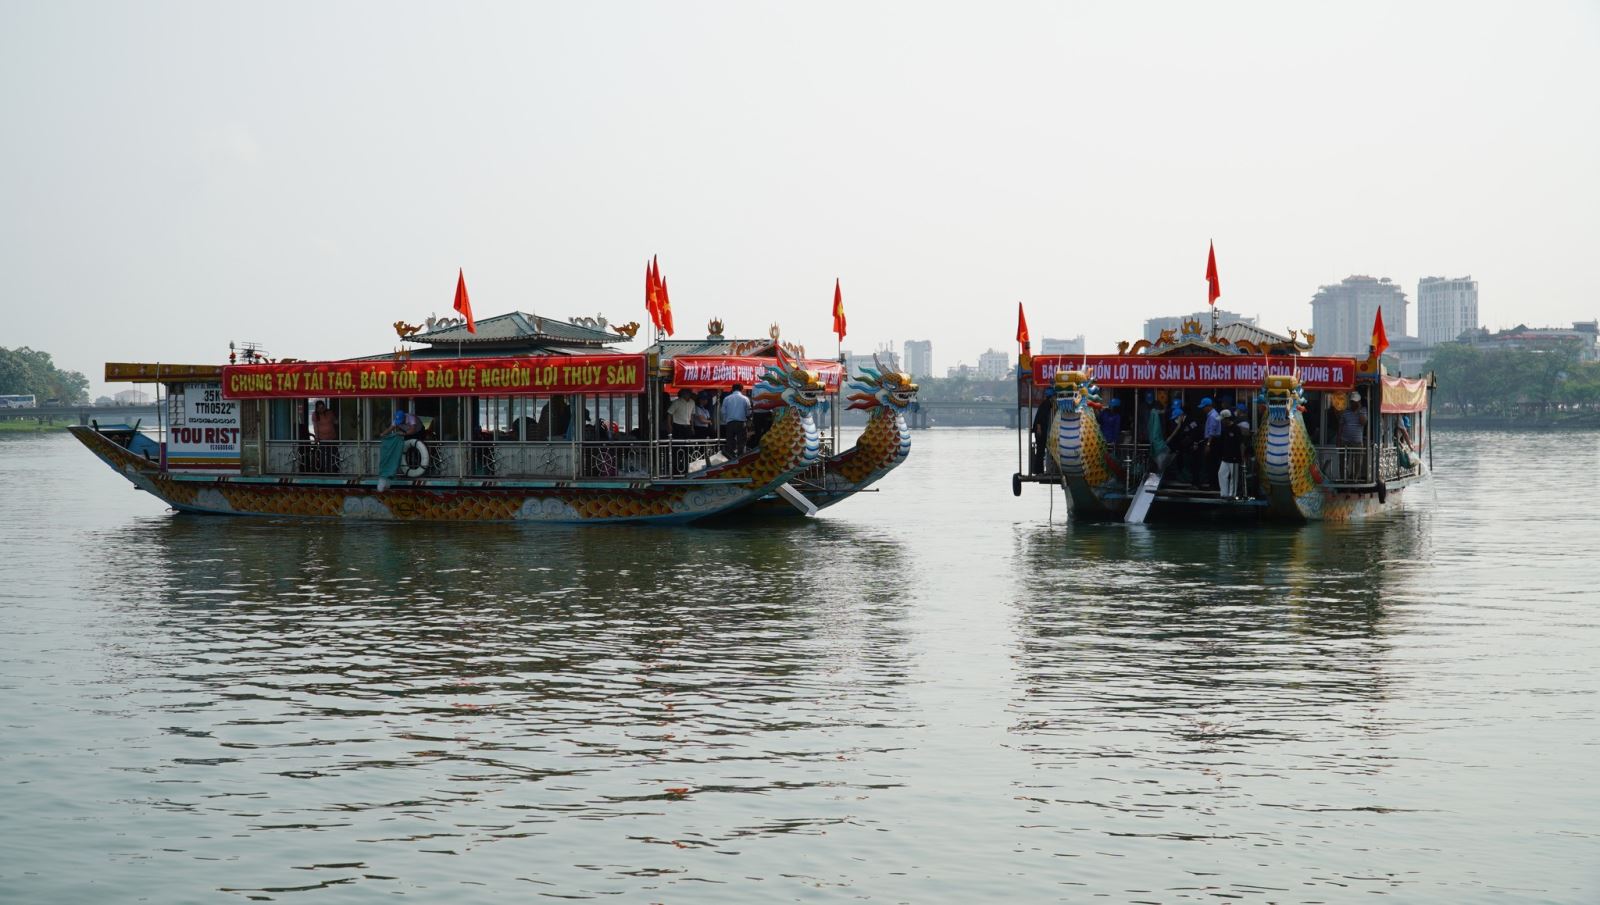 Hàng năm tỉnh Thừa Thiên- Huế phát động nhiều buổi Lễ thả cá, tôm và các giống loài thủy sản vào các thủy vực nhằm bảo vệ nguồn lợi thủy sản và môi trường thủy sinh.